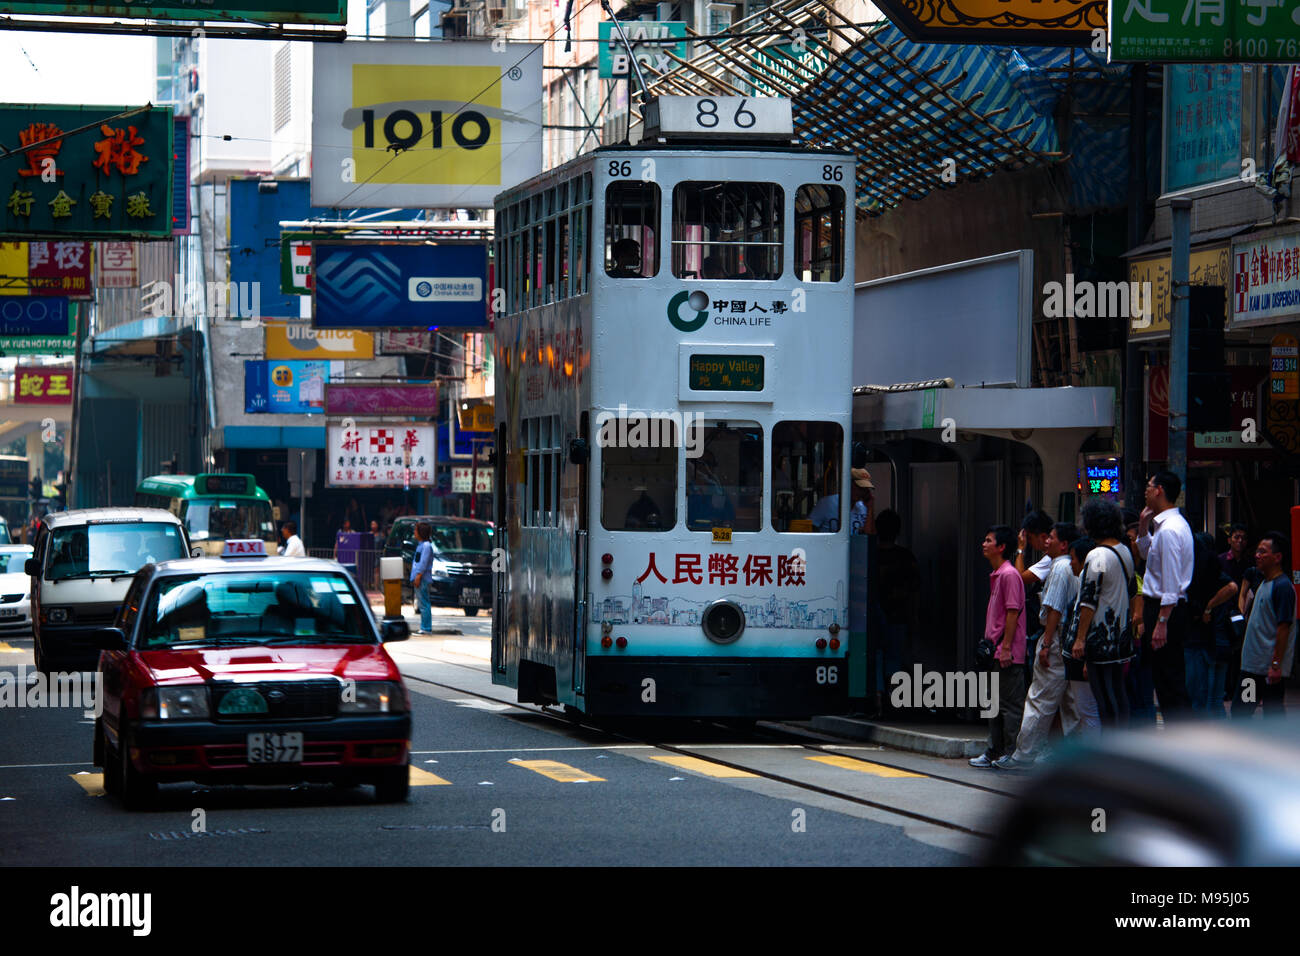 Un iconico double-decker bus tram viaggiano in una strada trafficata nel centro cittadino di Hong Kong, Cina Foto Stock